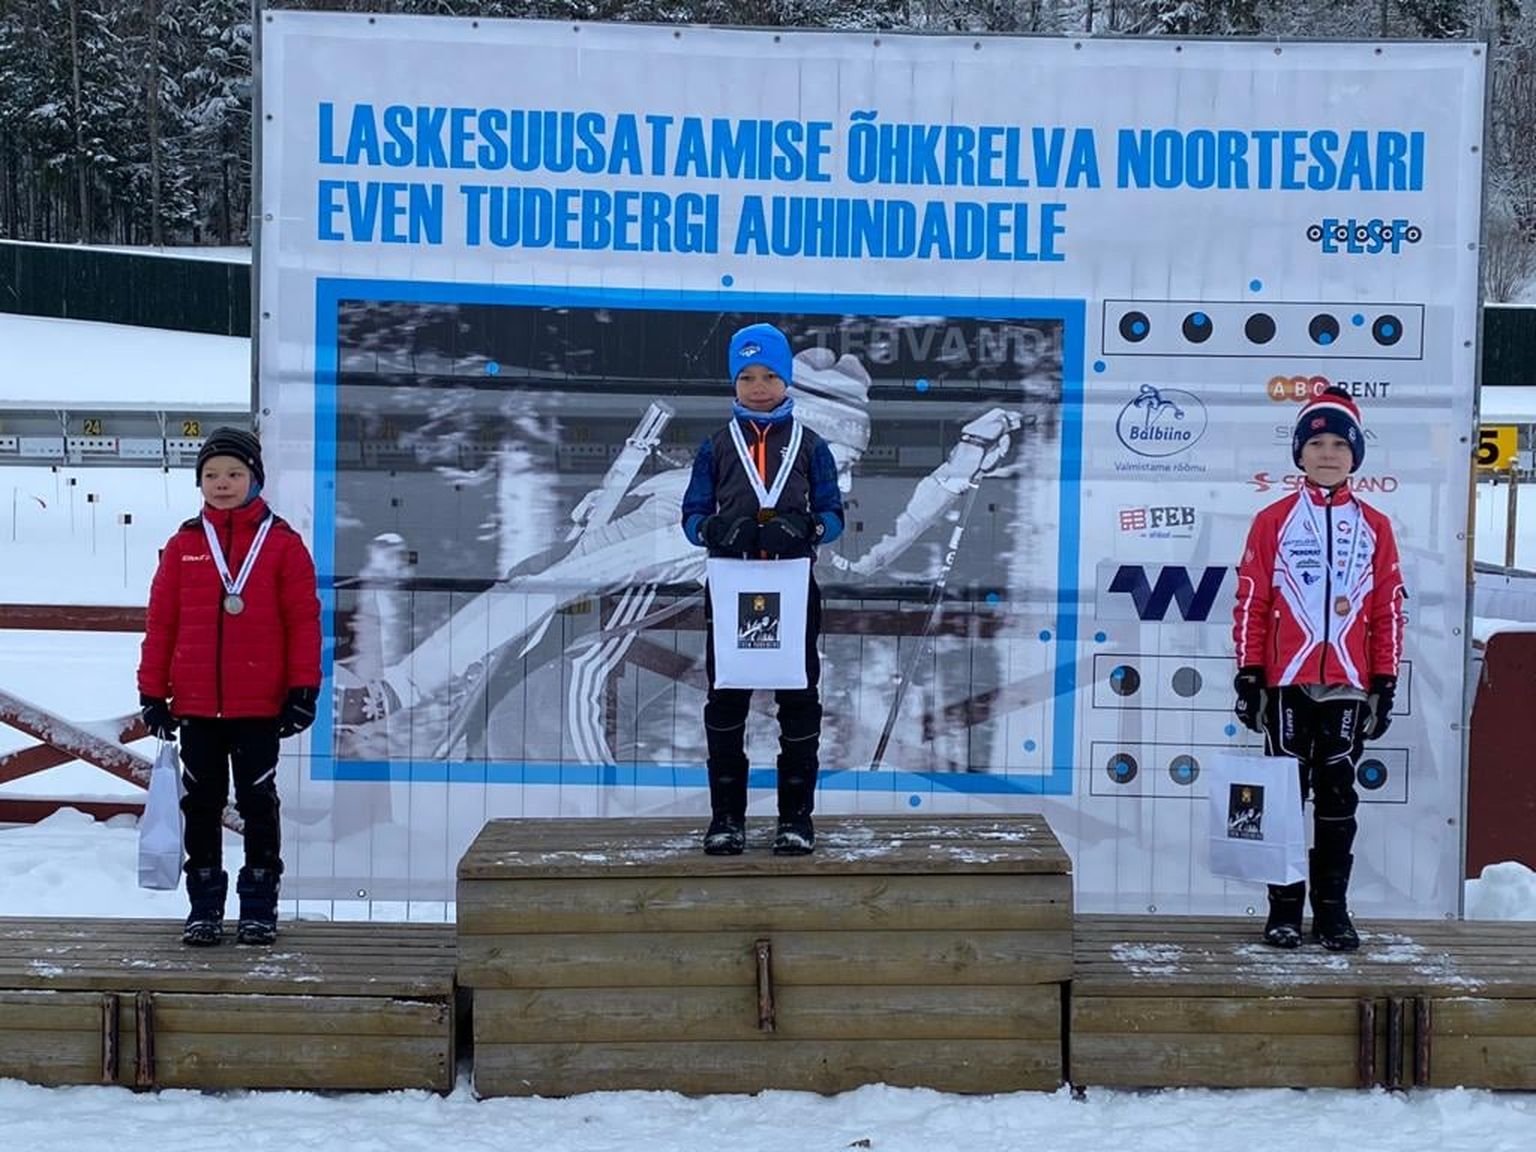 Vanusegrupi M8 parimad: esikohale tuli otepäälane Kaspar Kärp (Kagu Biathlon), teisele kohale Andre Vanasaun (Nõmme Spordiklubi) ja kolmandaks Tommi-Robin Tallermaa (Nõmme spordiklubi).